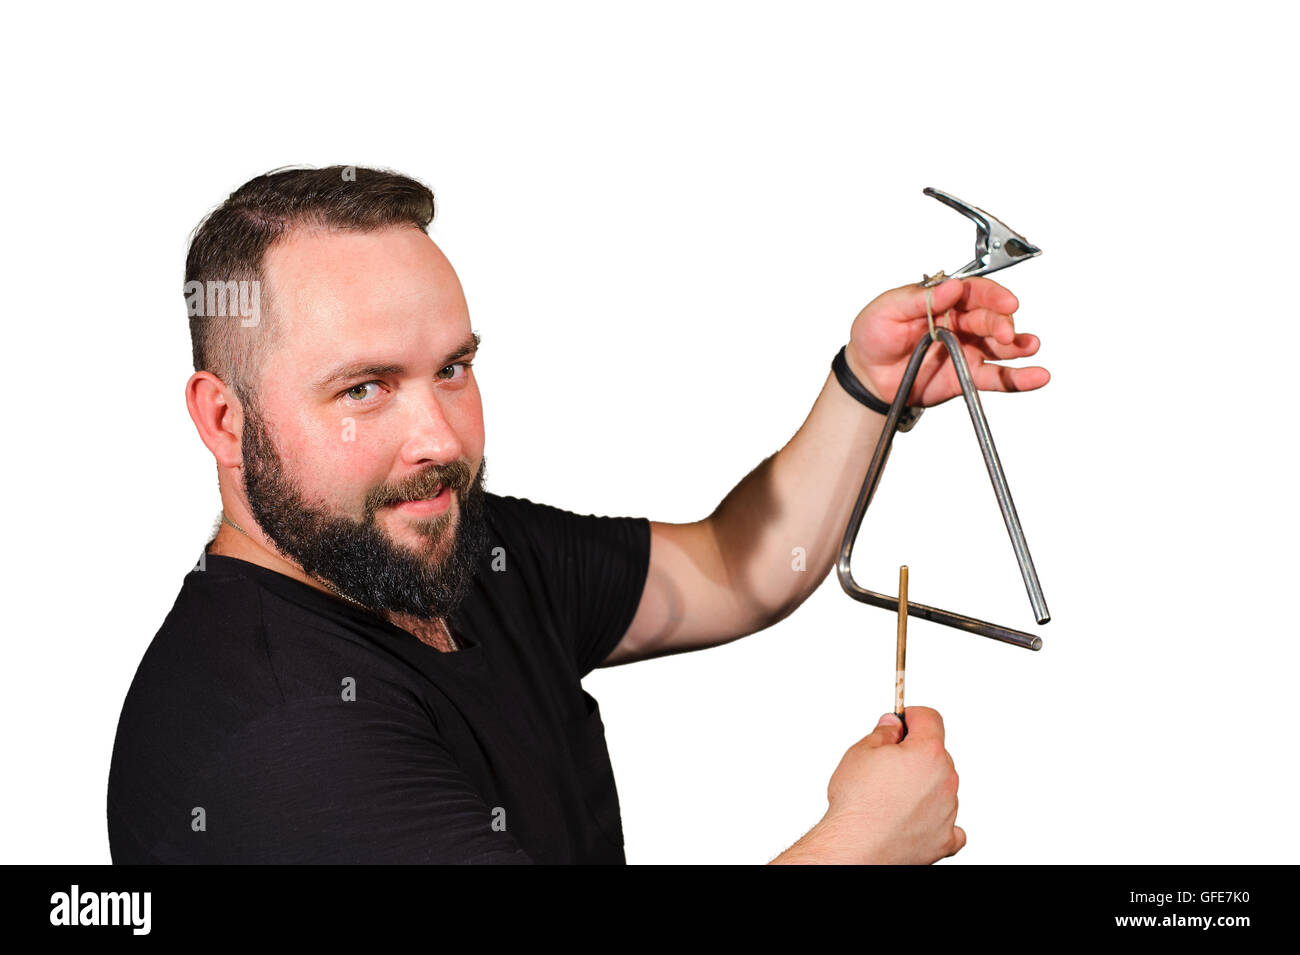 Un homme avec une barbe jouer sur les instruments de musique à percussion.isolé sur fond blanc. Banque D'Images